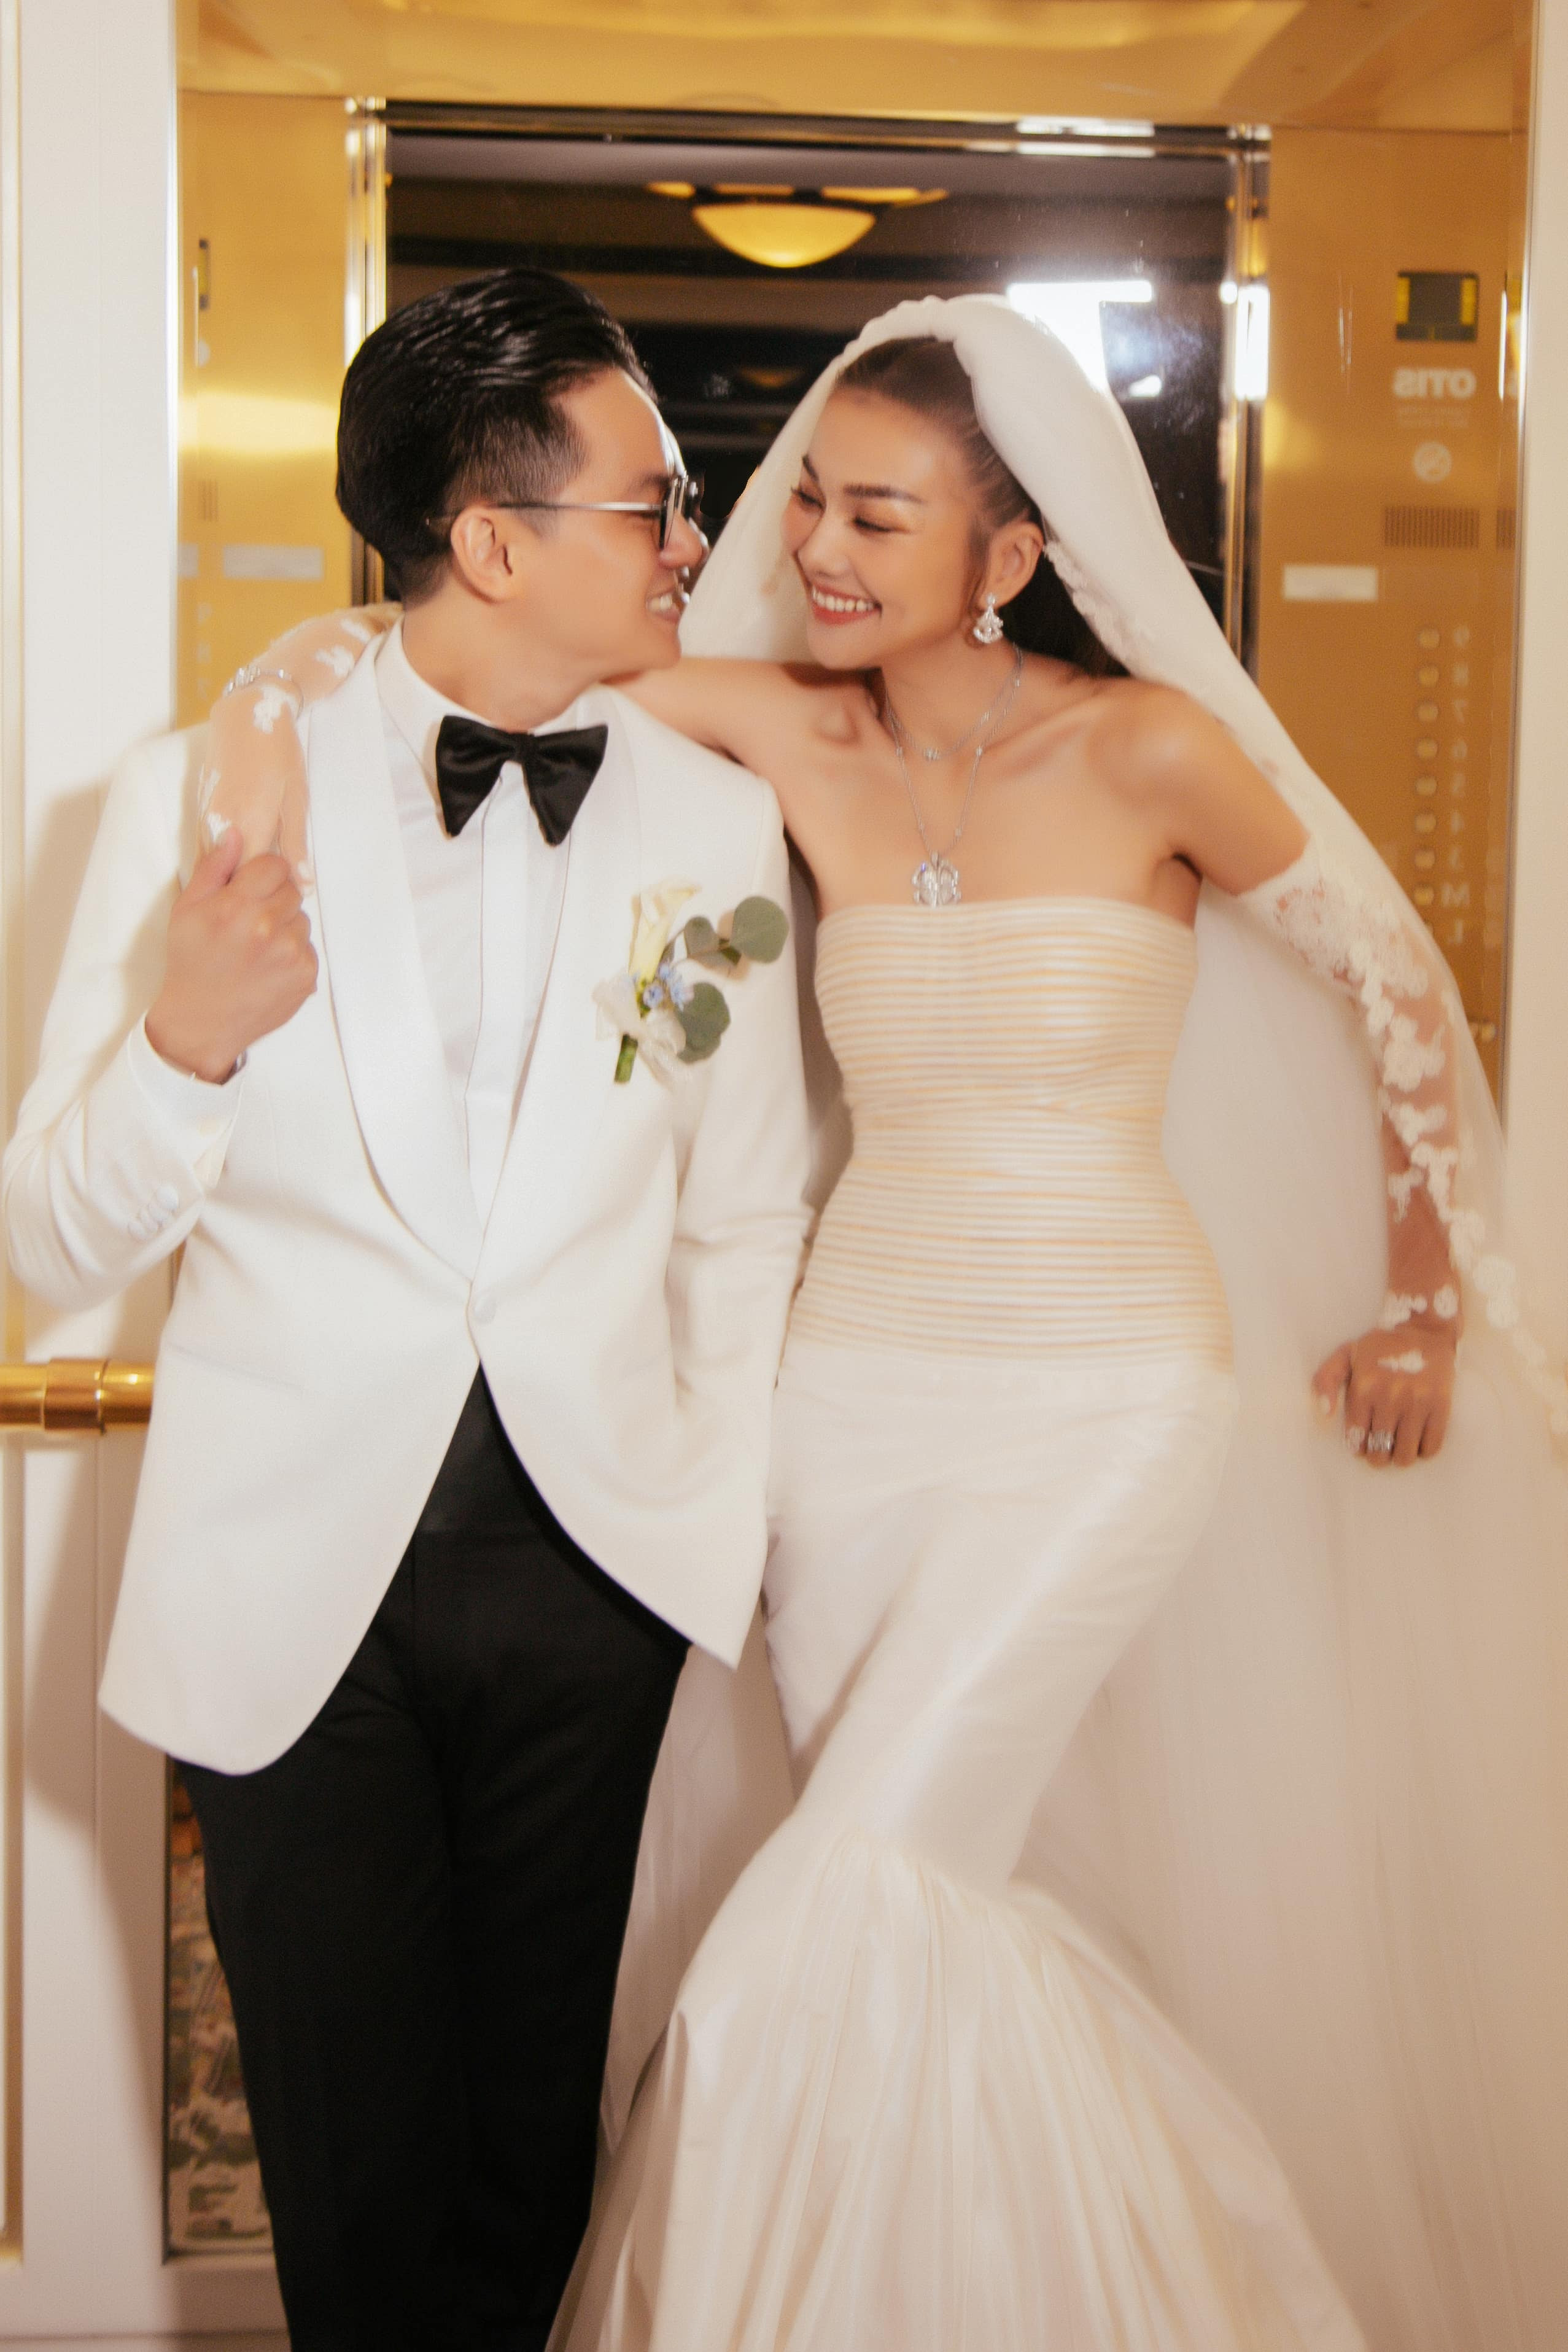 Đám cưới của Doãn Hải My - Đoàn Văn Hậu ở Hà Nội - VnExpress Giải trí